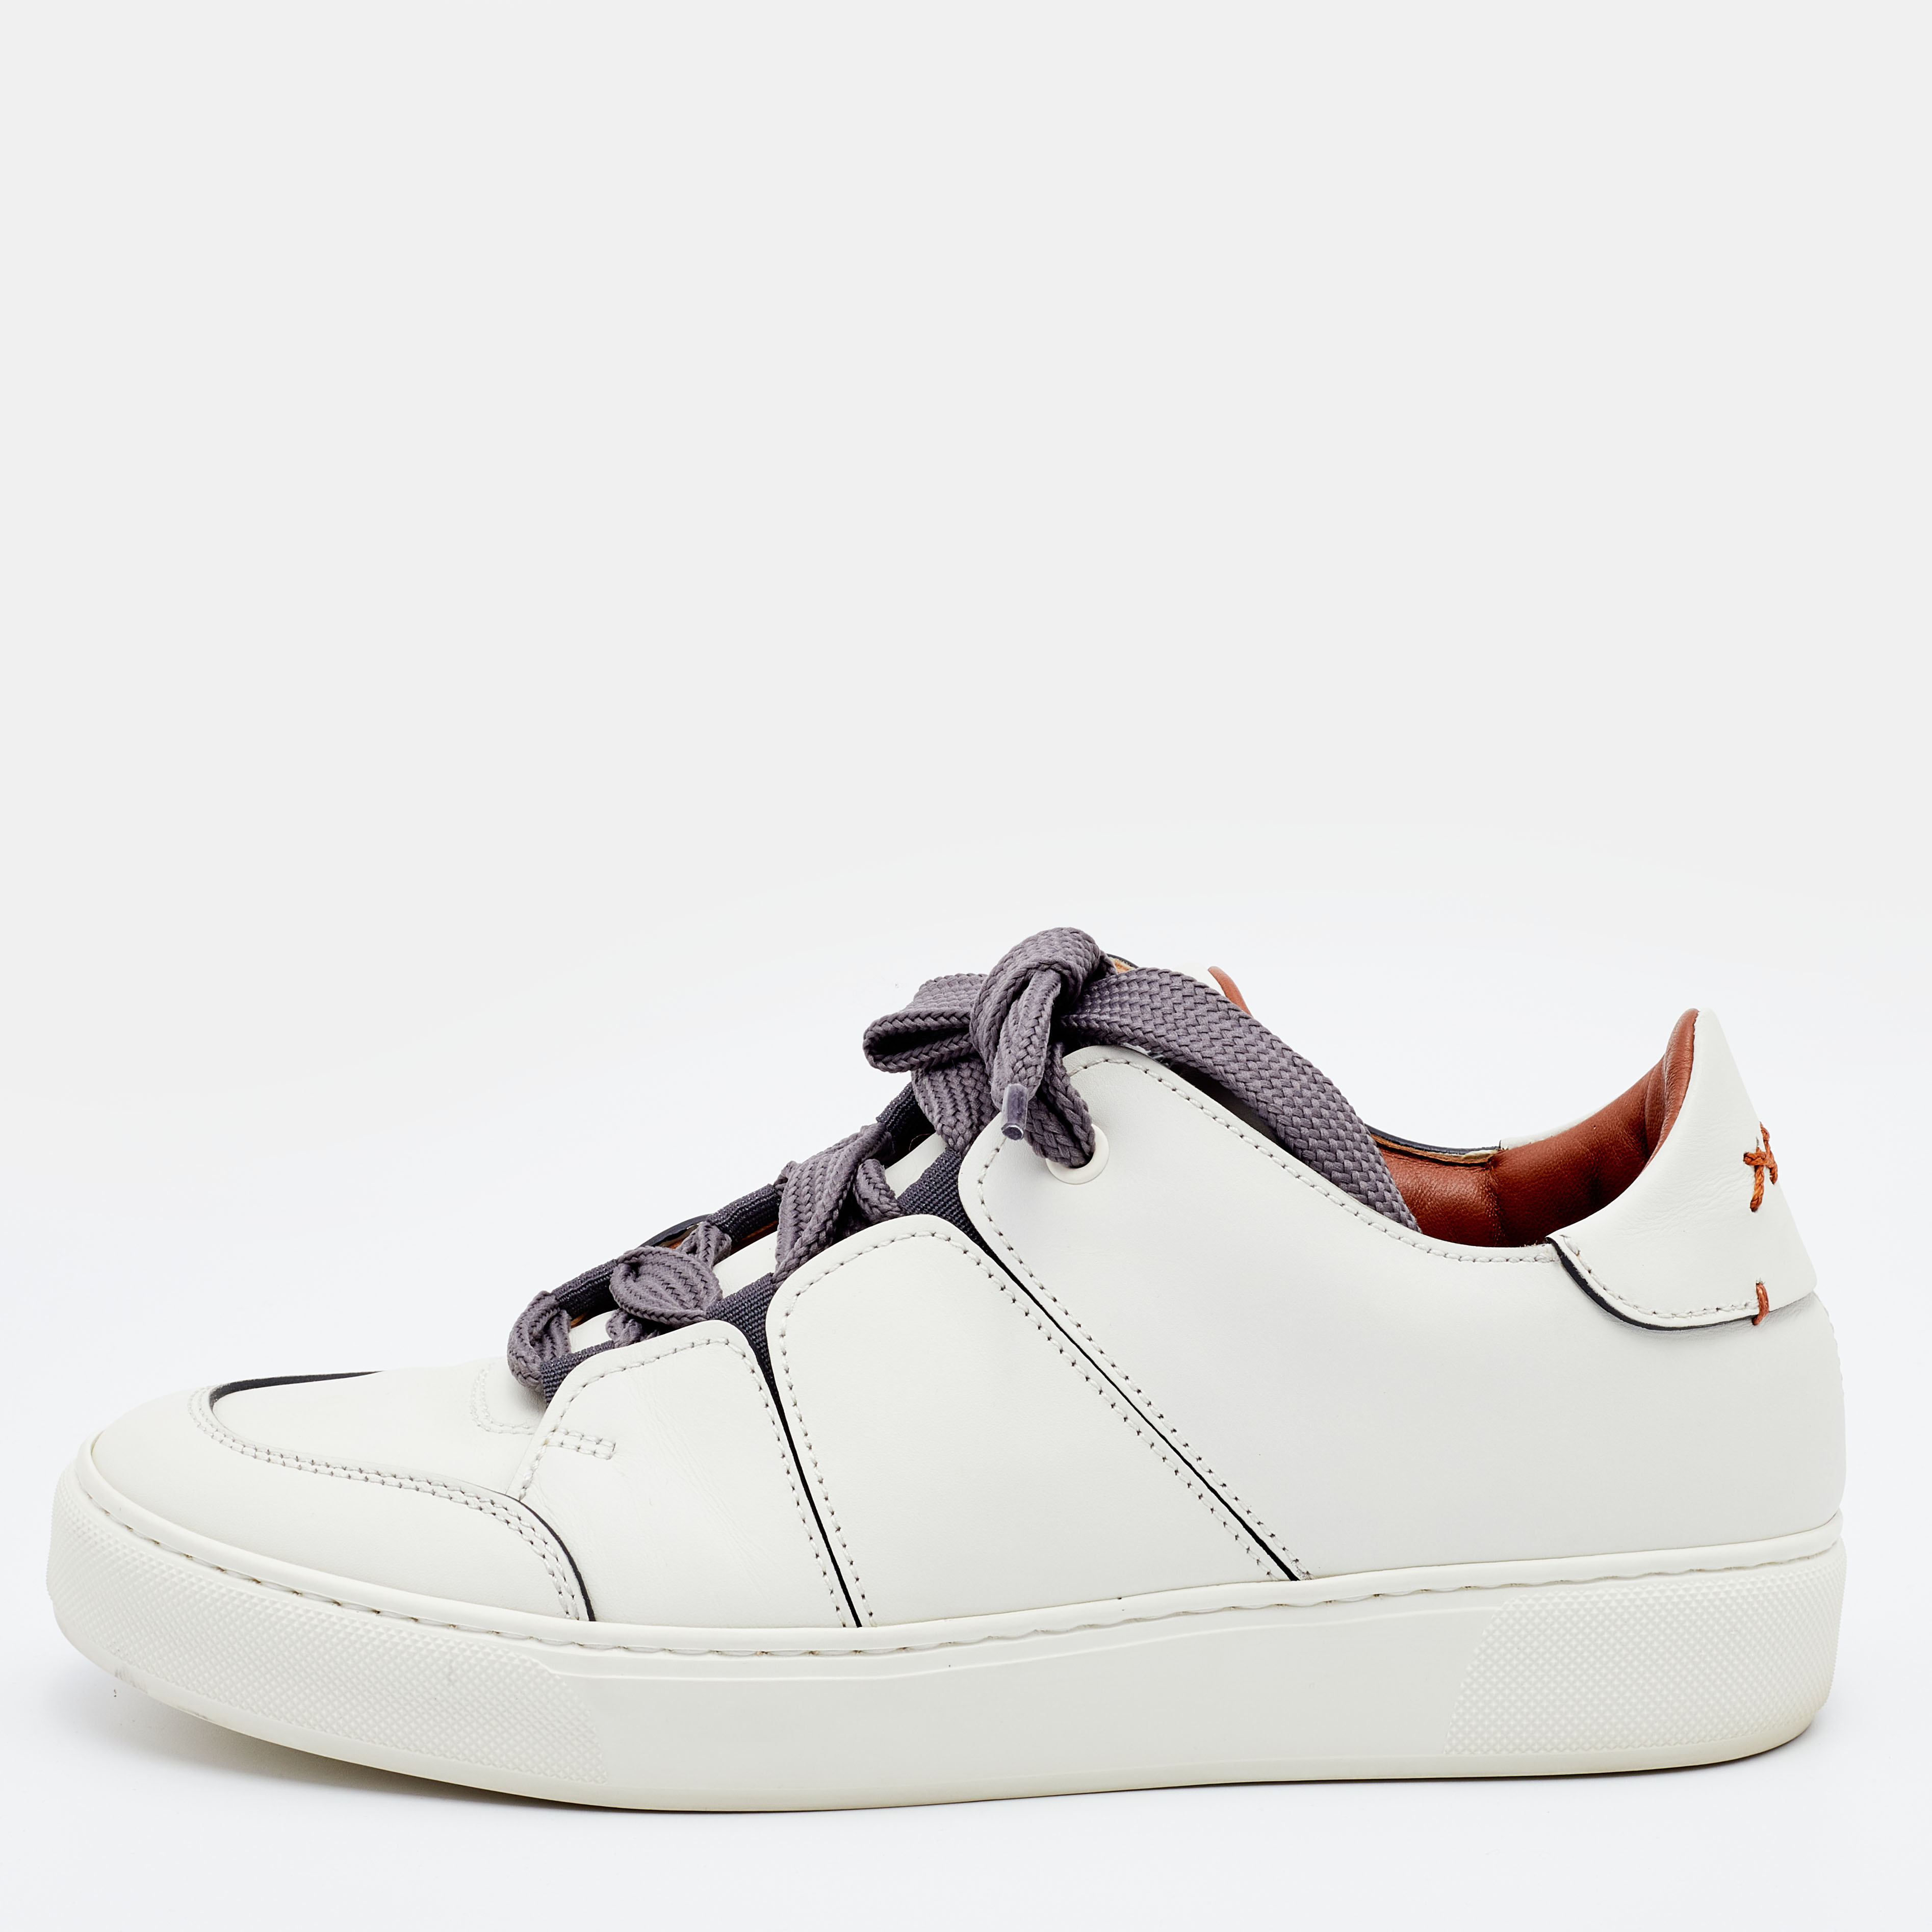 Ermenegildo Zegna Off White Leather Tiziano Sneakers Size 42